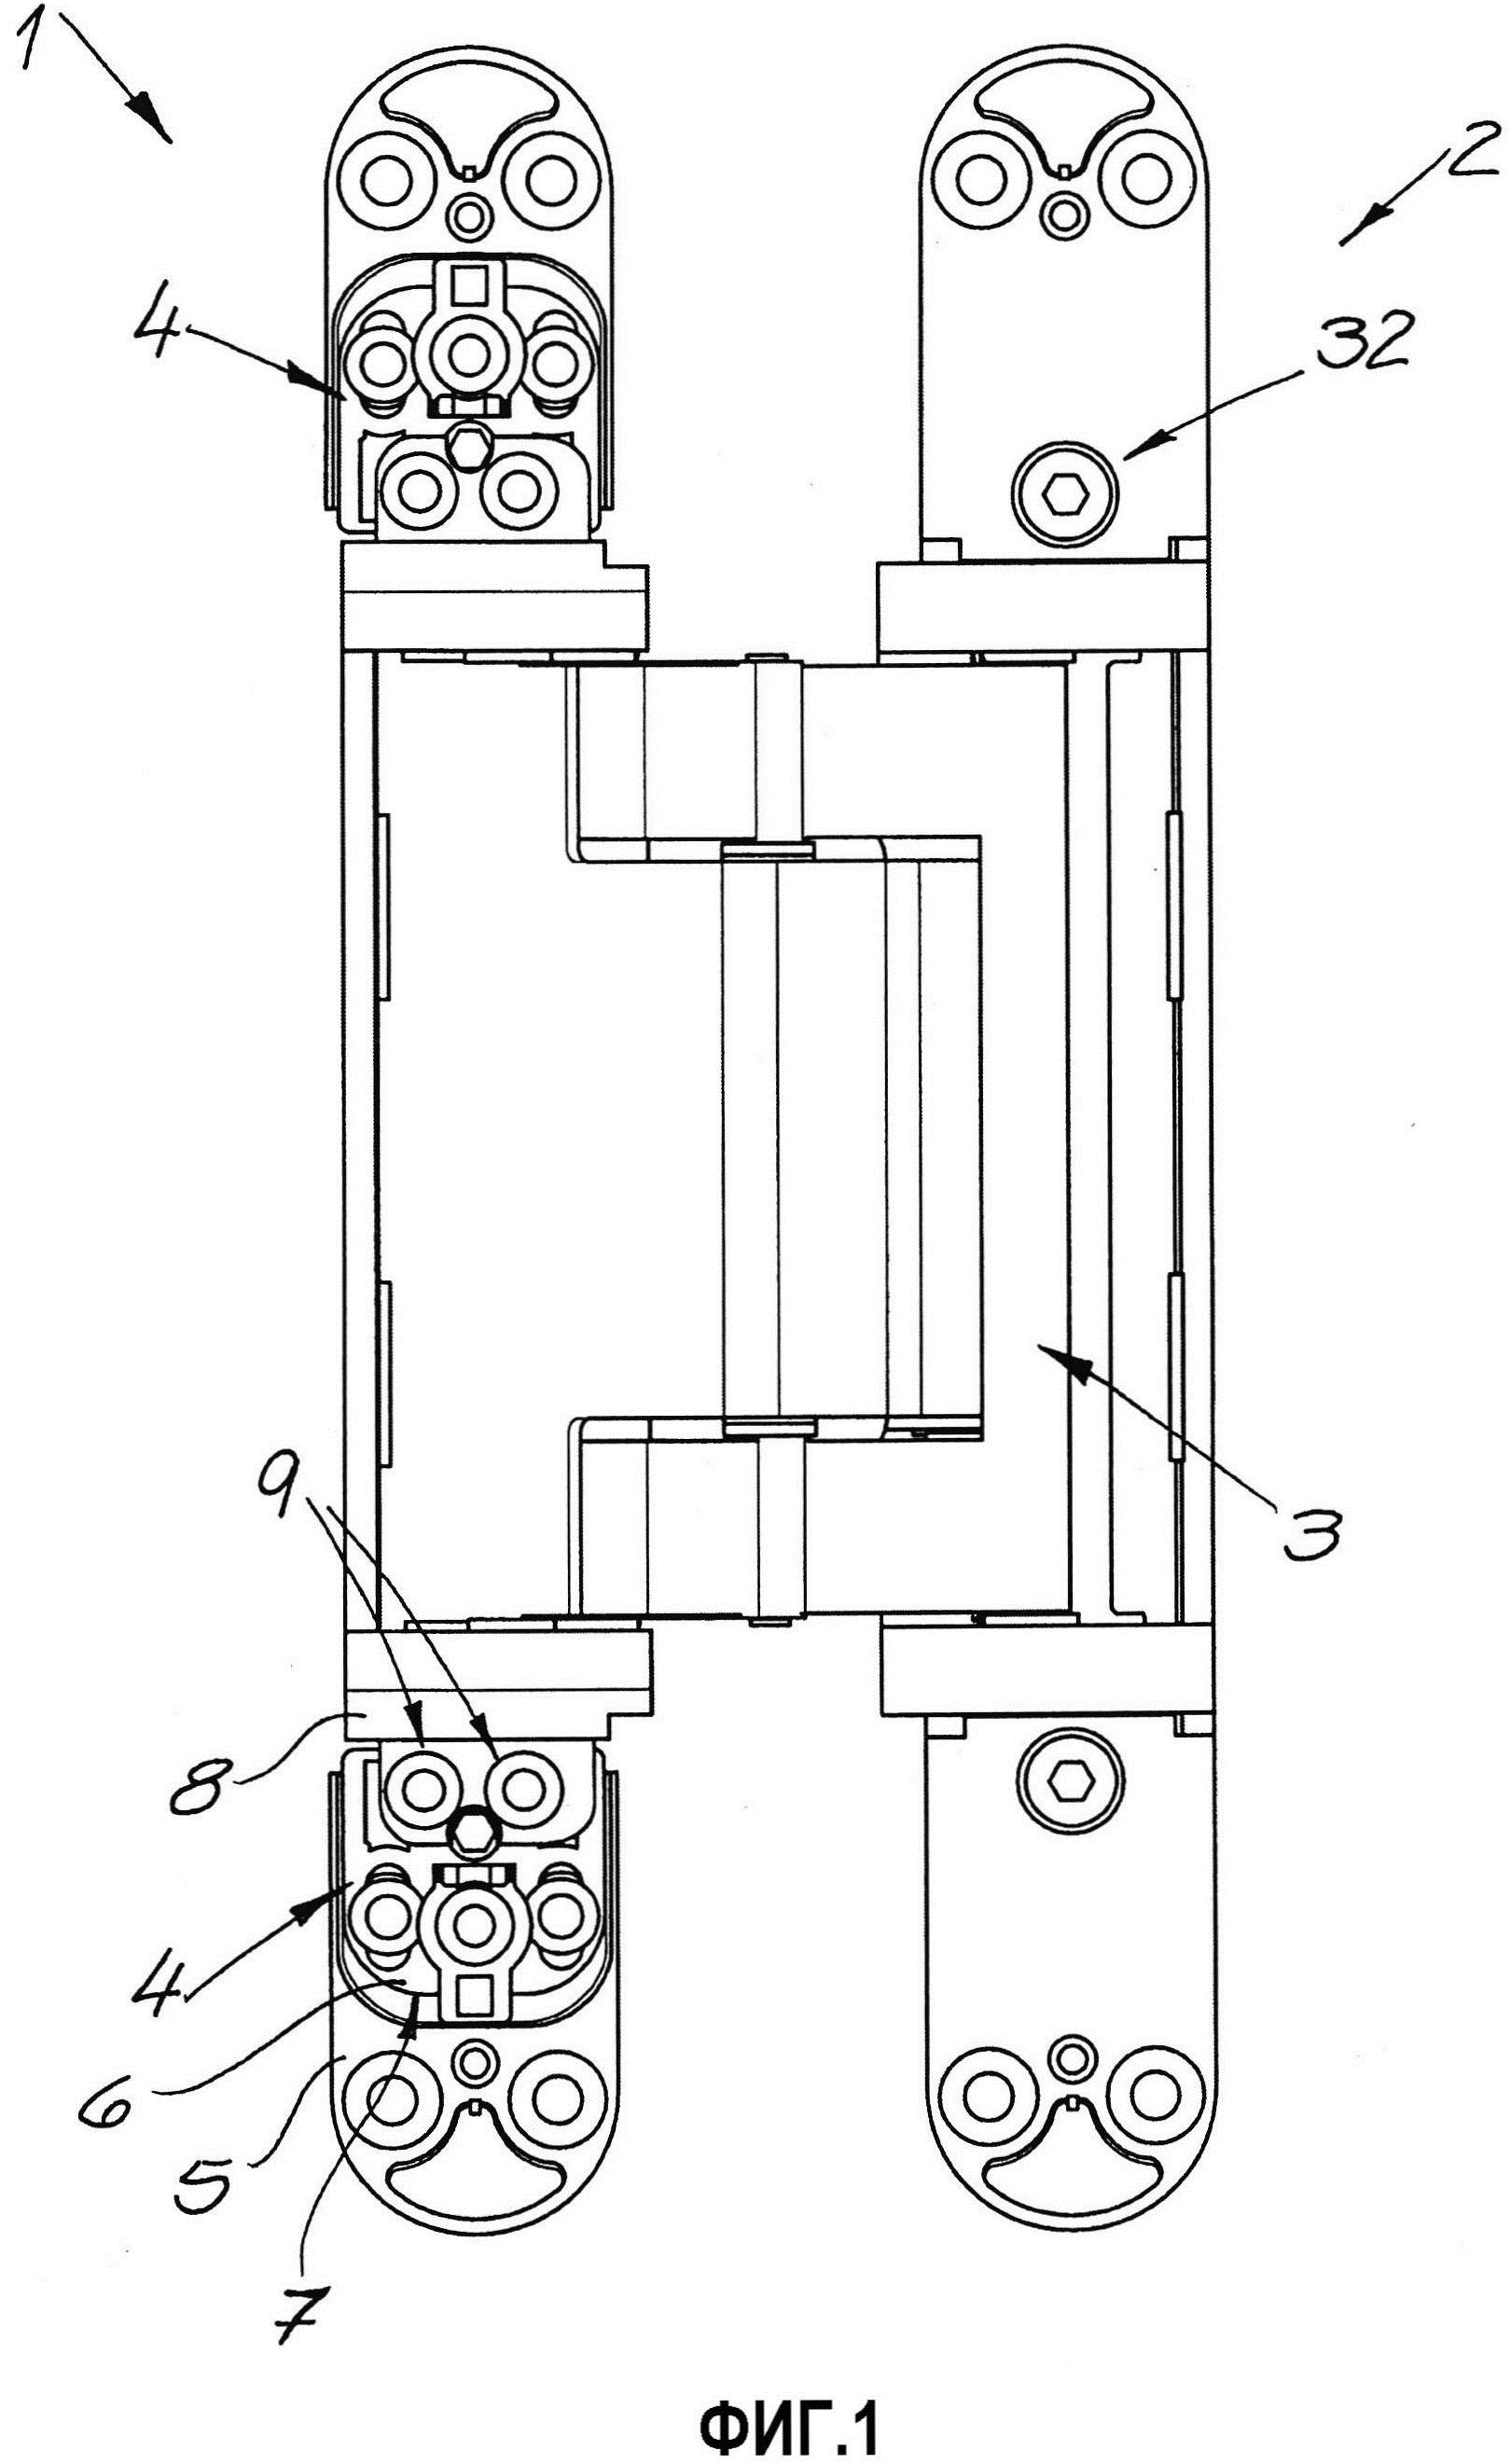 Петлевой базирующий элемент скрытой петлевой системы для дверей или окон и дверная петля с петлевым базирующим элементом